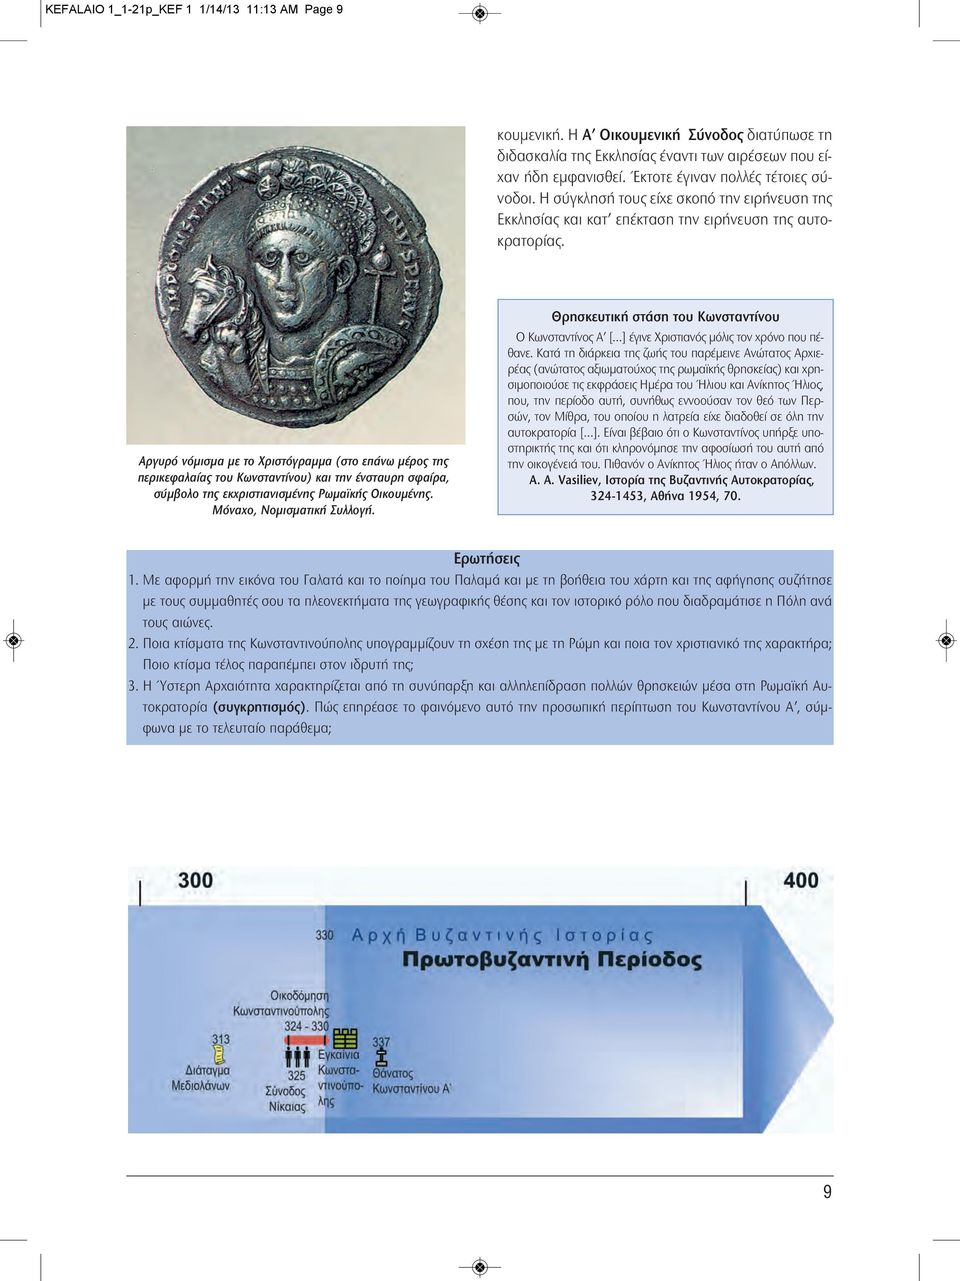 Αργυρό νόμισμα με το Χριστόγραμμα (στο επάνω μέρος της περικεφαλαίας του Κωνσταντίνου) και την ένσταυρη σφαίρα, σύμβολο της εκχριστιανισμένης Ρωμαϊκής Οικουμένης. Μόναχο, Νομισματική Συλλογή.